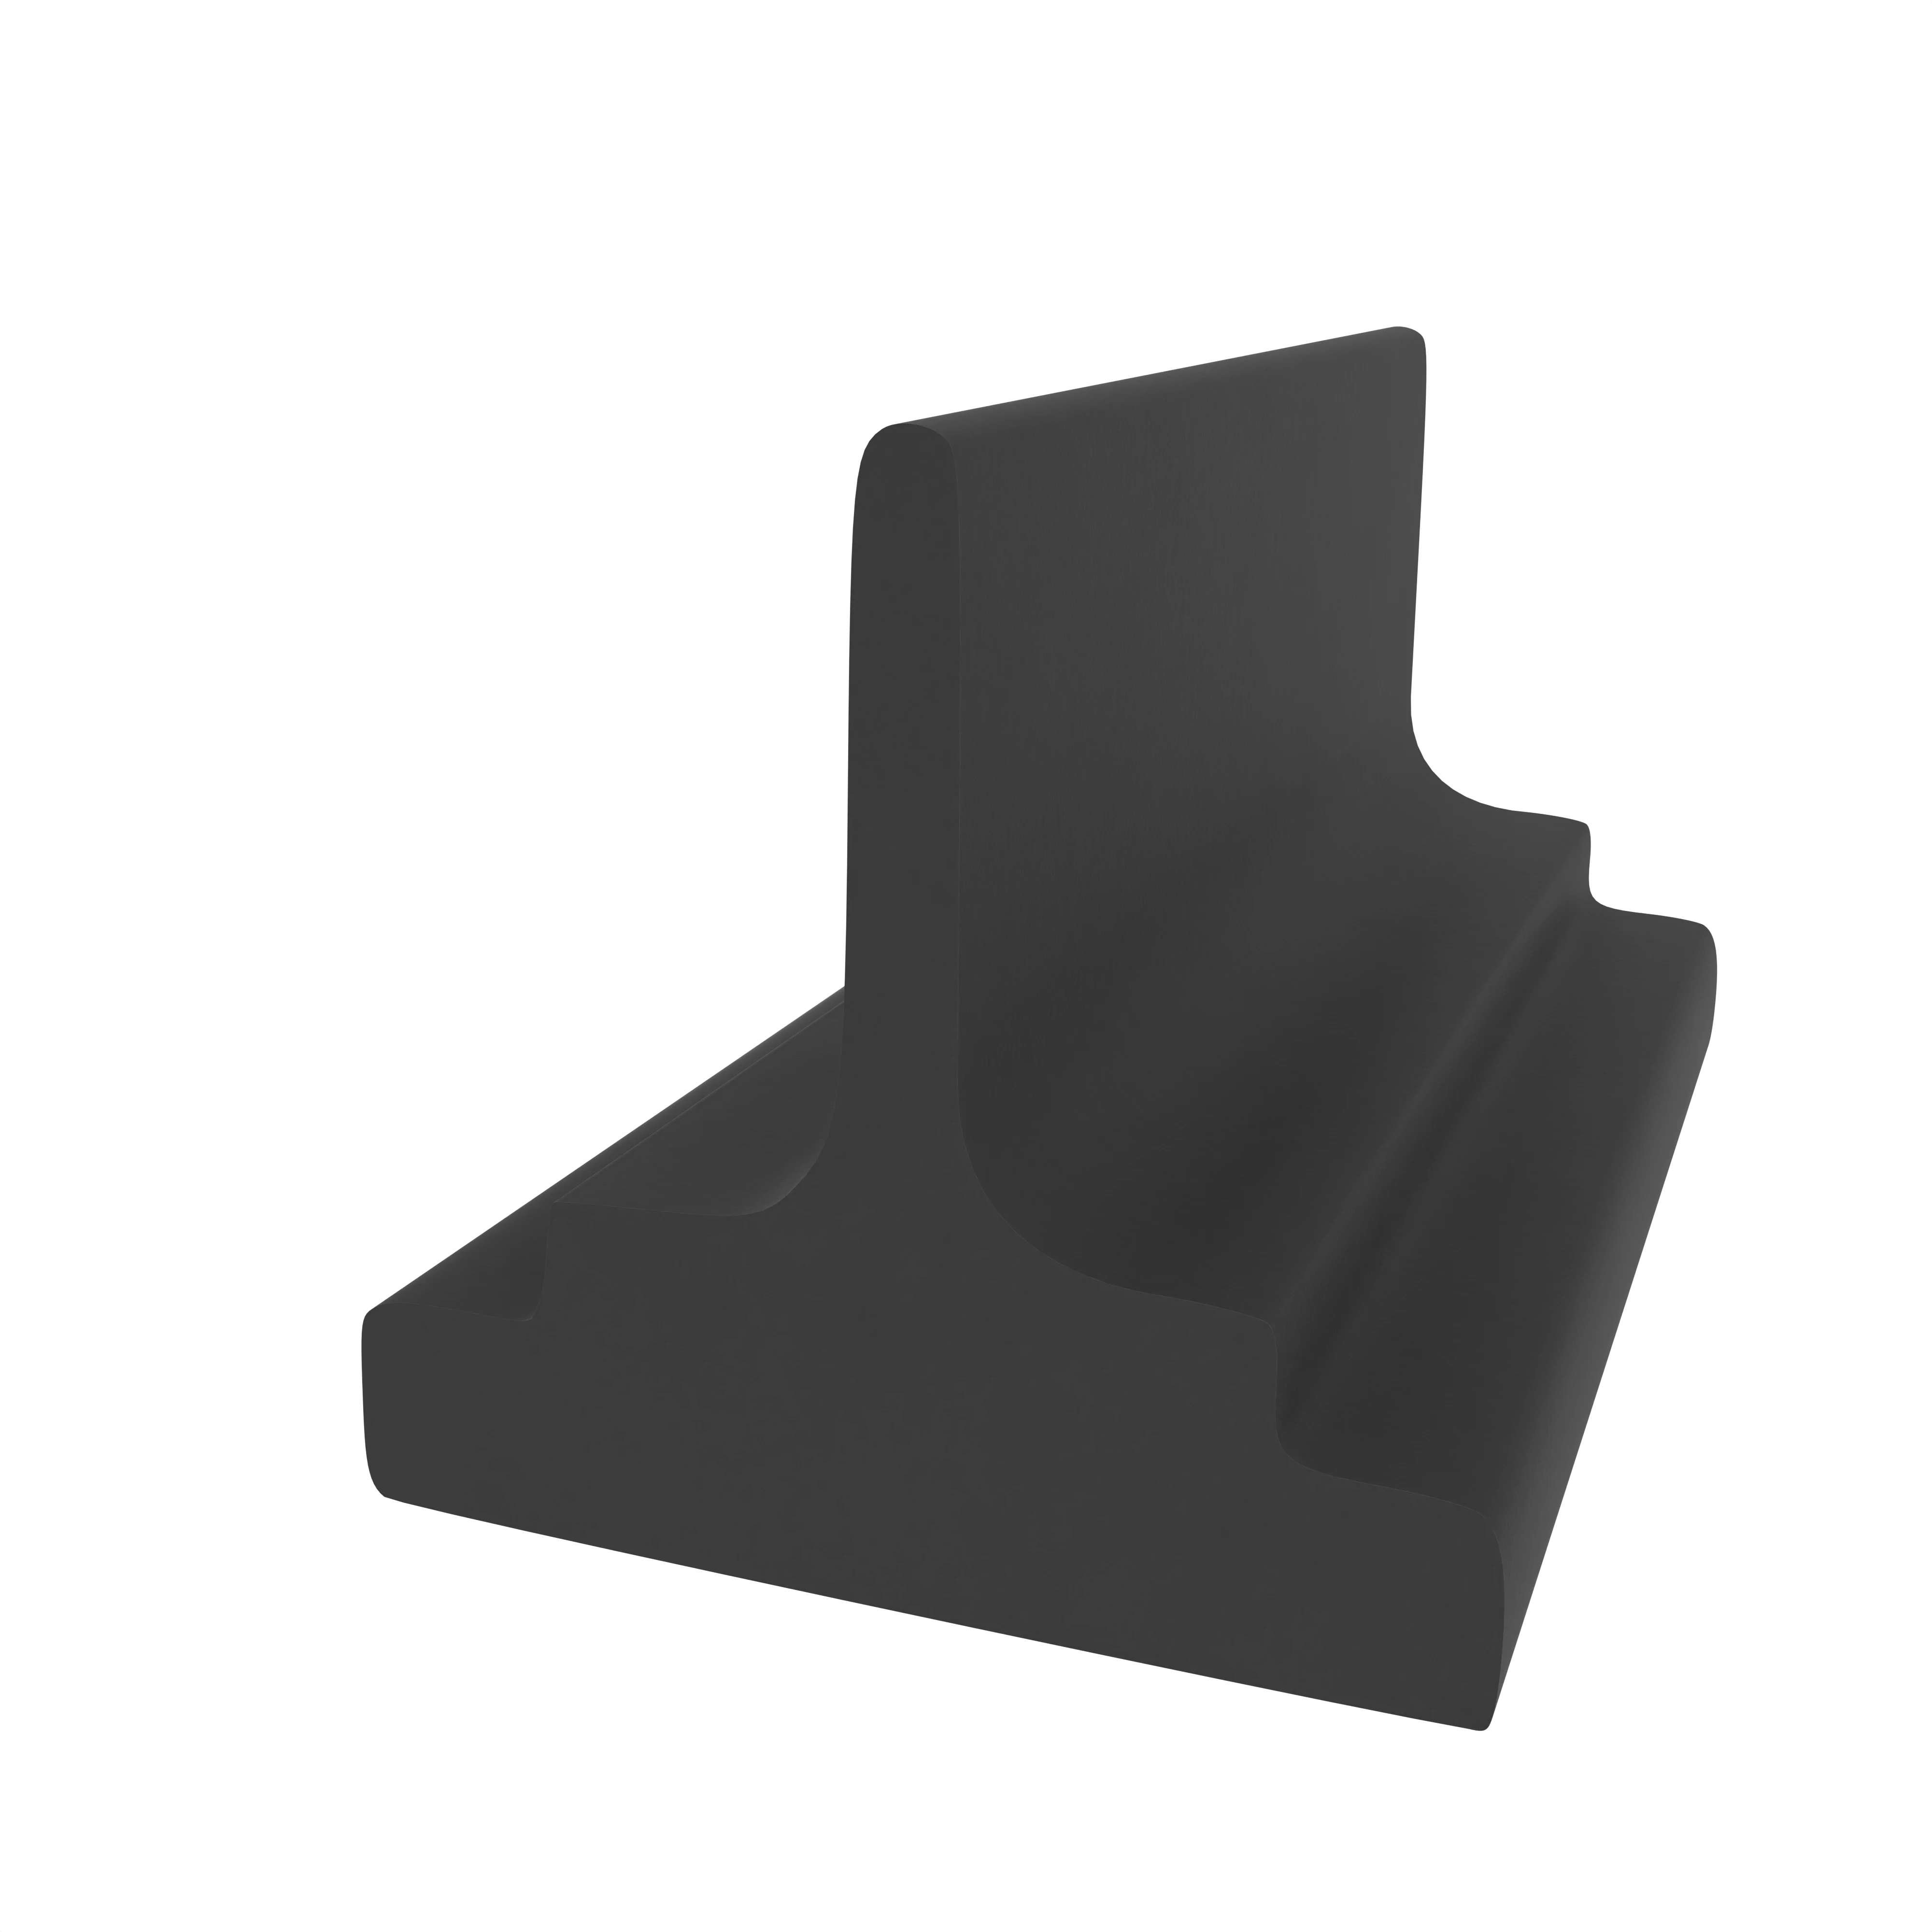 Mitteldichtung für Metall- und Alufenster | 12 mm Höhe | Farbe: schwarz